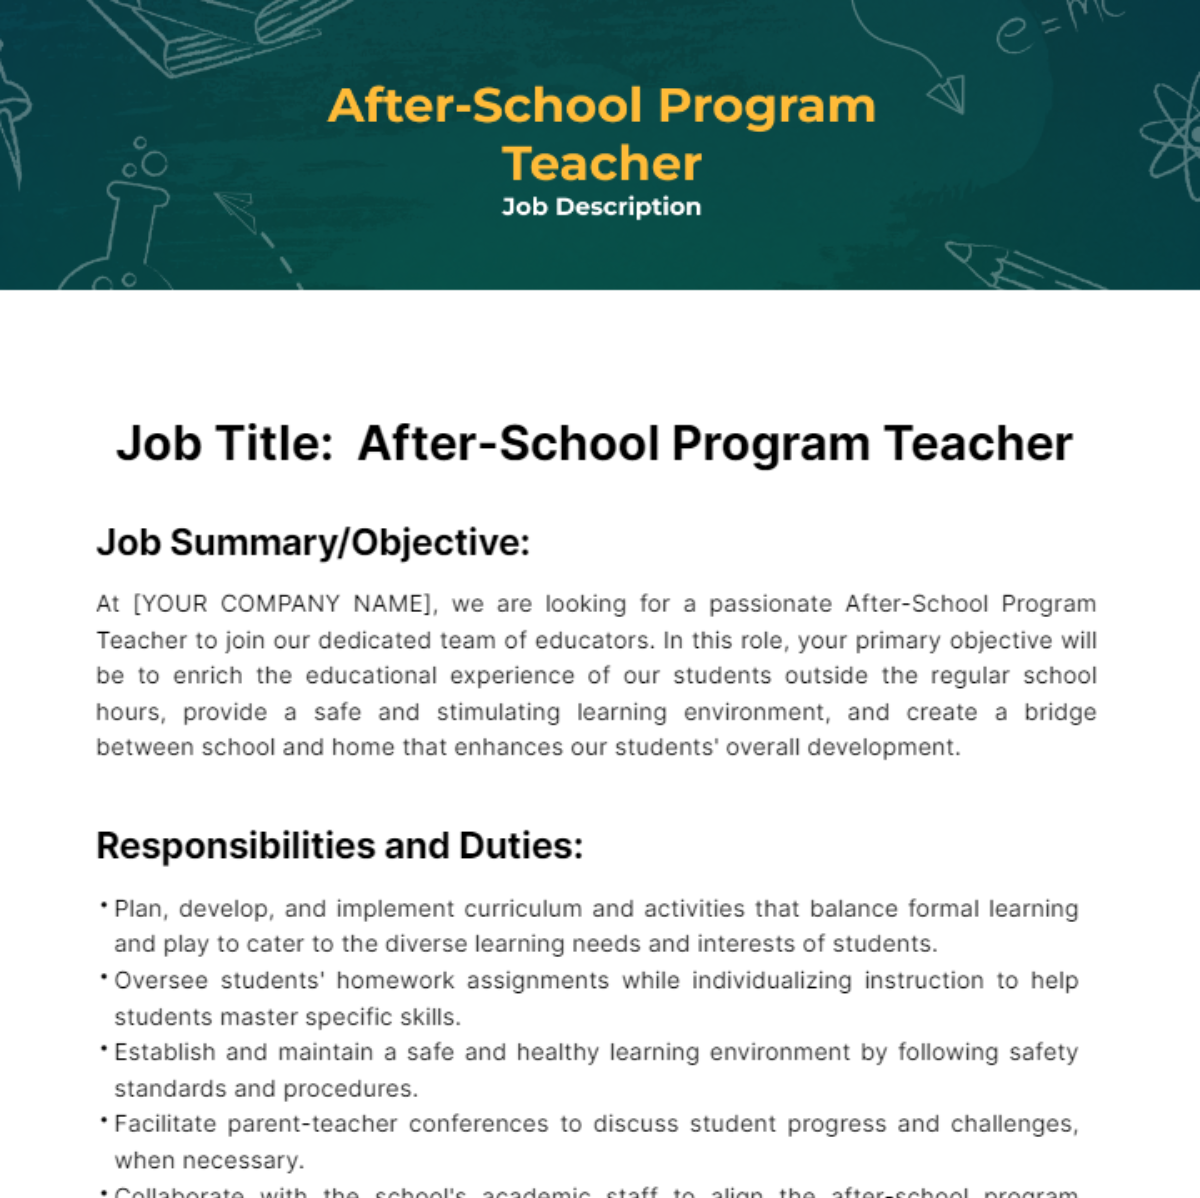 After-School Program Teacher Job Description Template